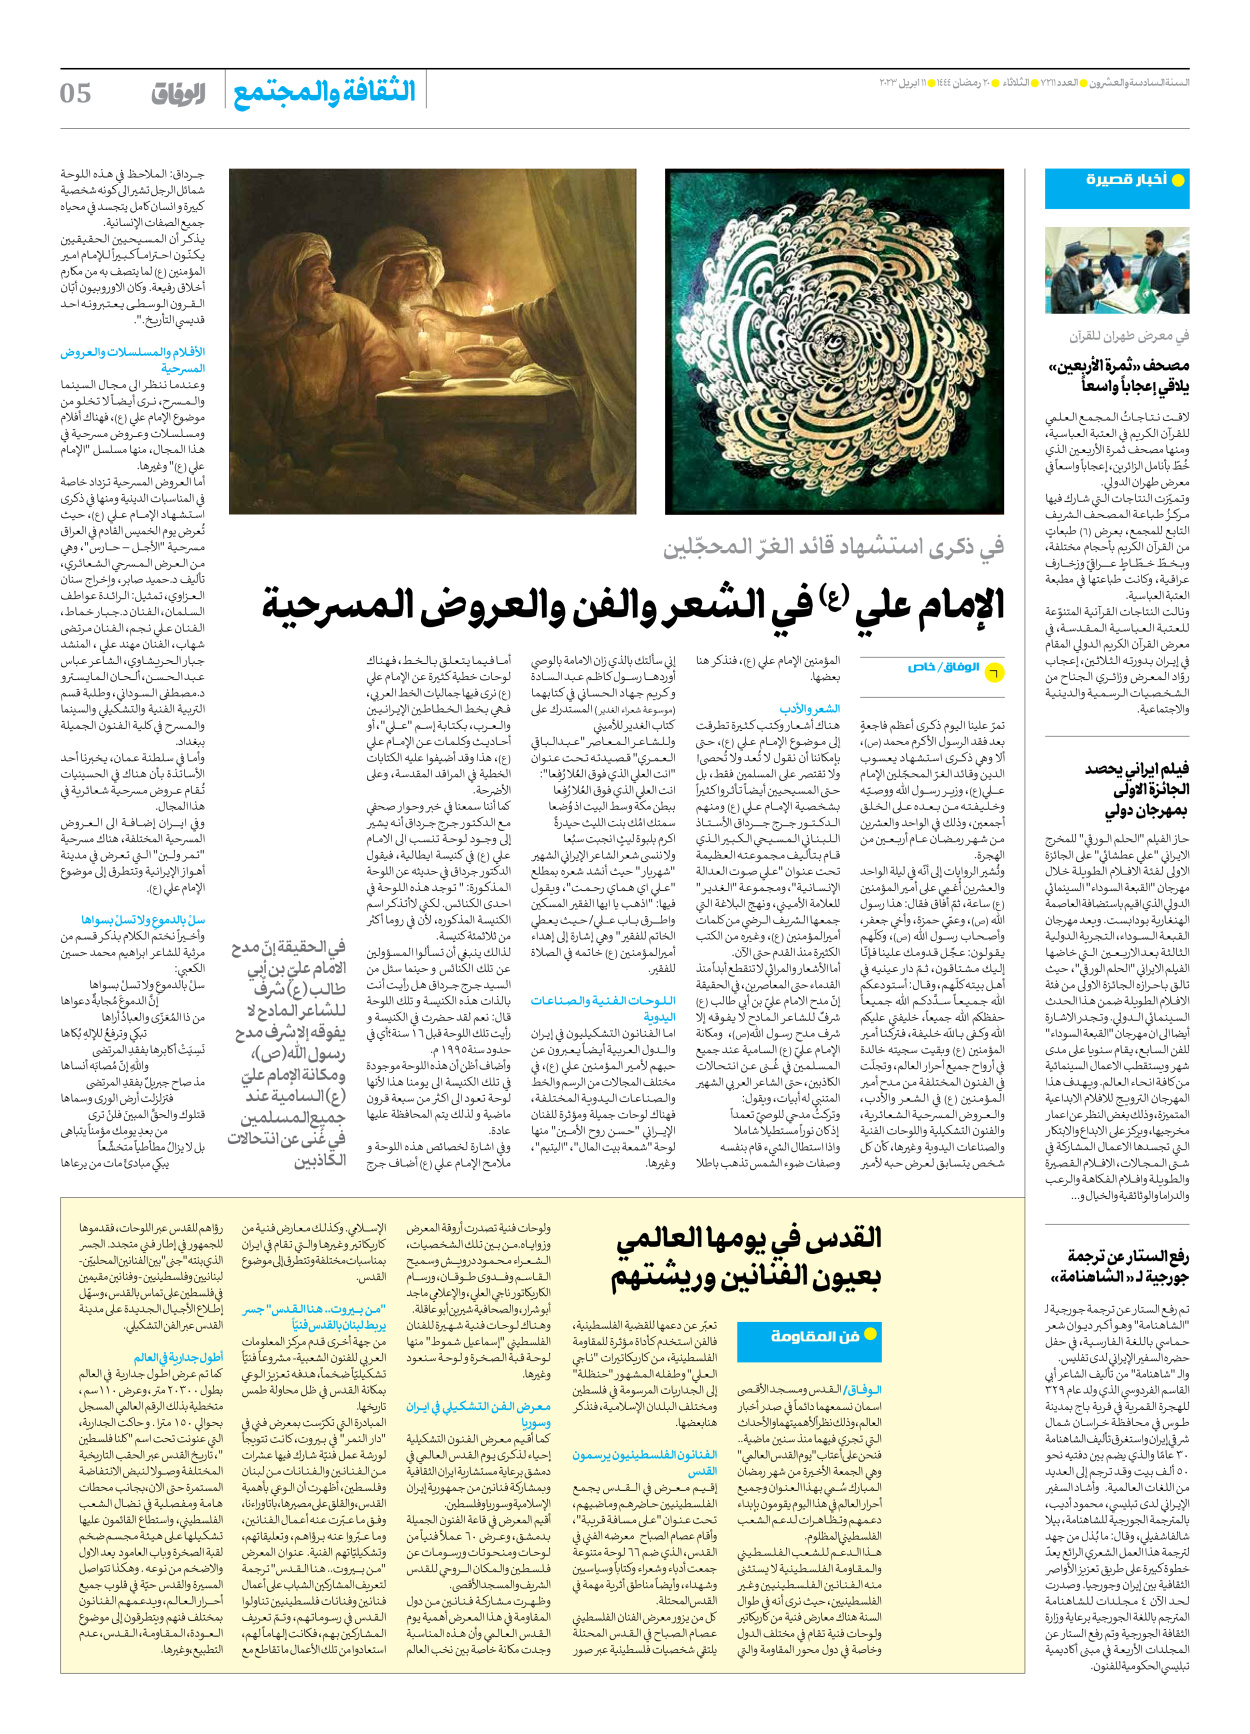 صحیفة ایران الدولیة الوفاق - العدد سبعة آلاف ومائتان وأحد عشر - ١١ أبريل ٢٠٢٣ - الصفحة ٥